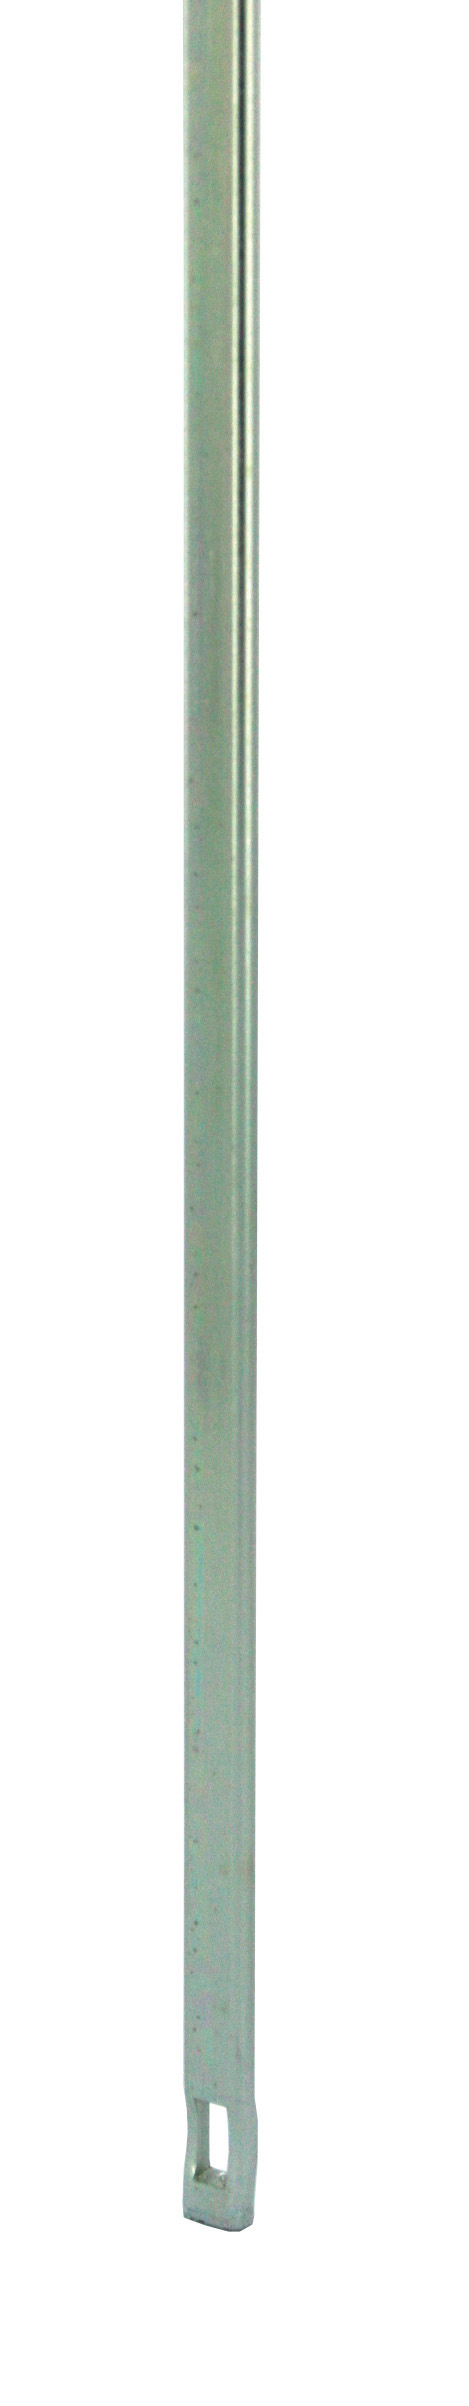 Tringle à lumière 4x8 long 1850mm - FERCO